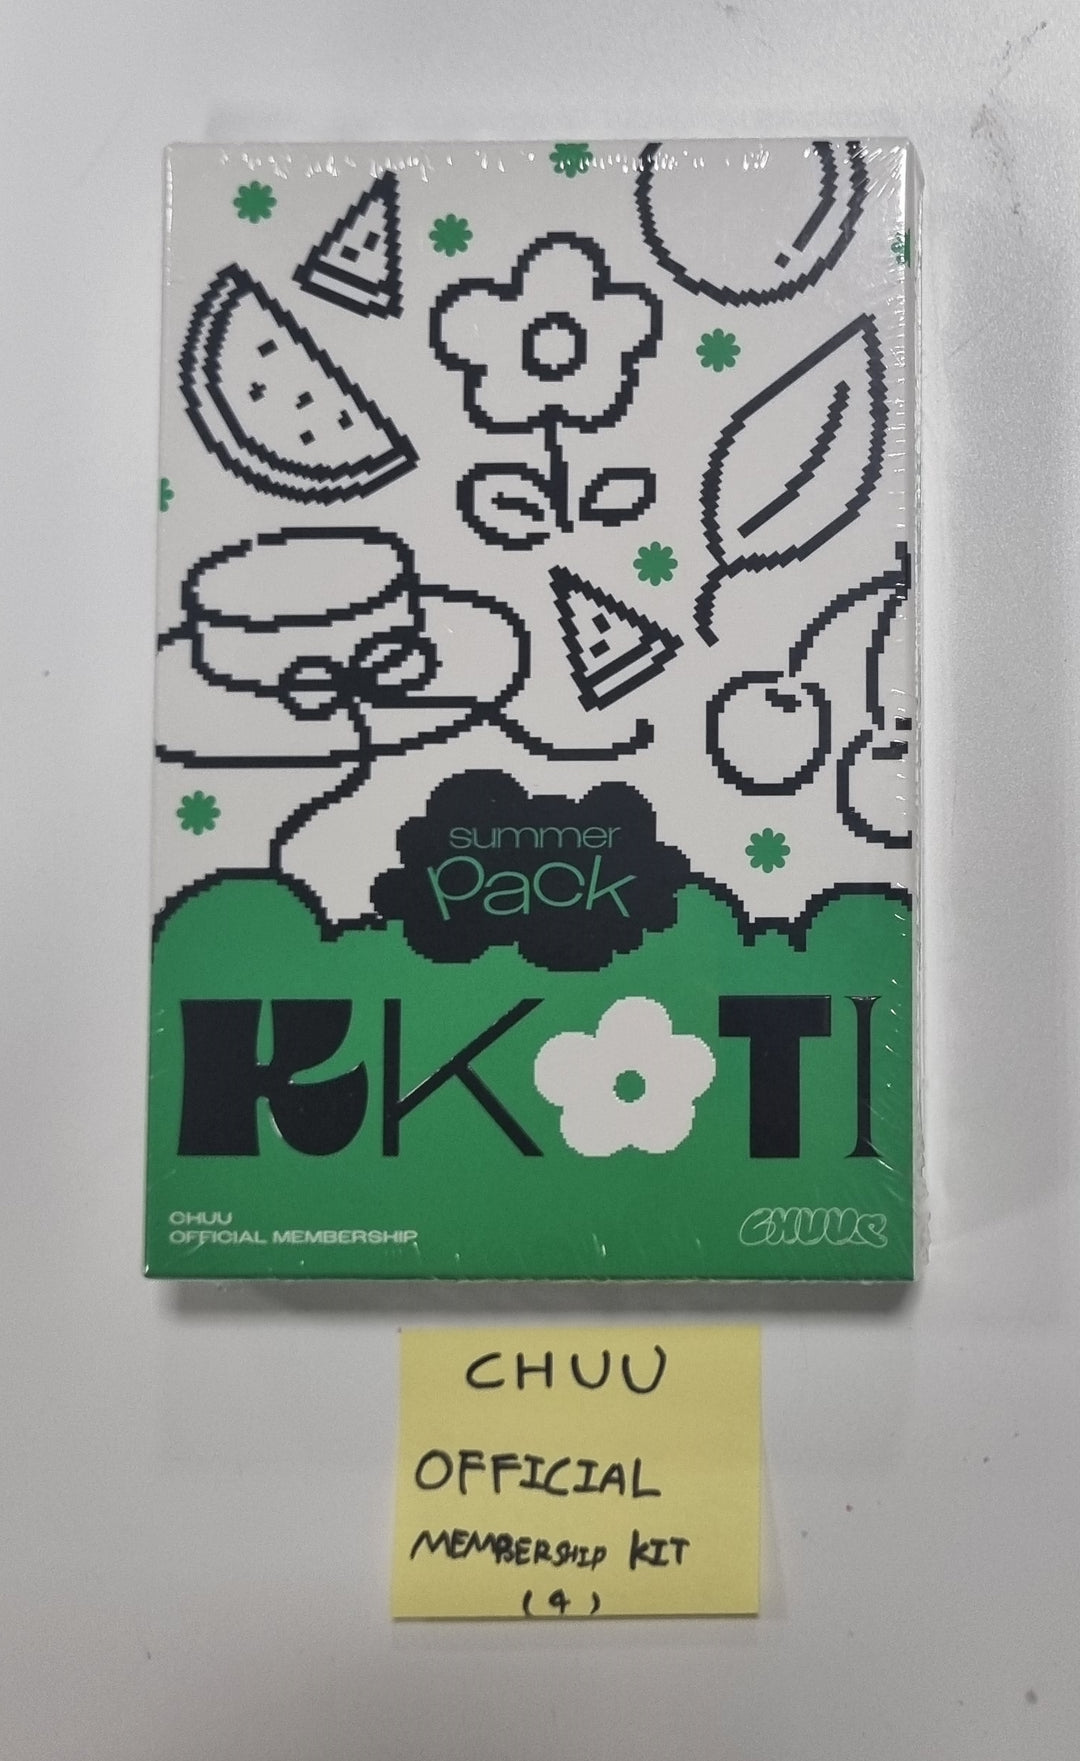 Chuu「KKOTI 1ST」 - オフィシャルファンクラブ会員キット [23.11.24]